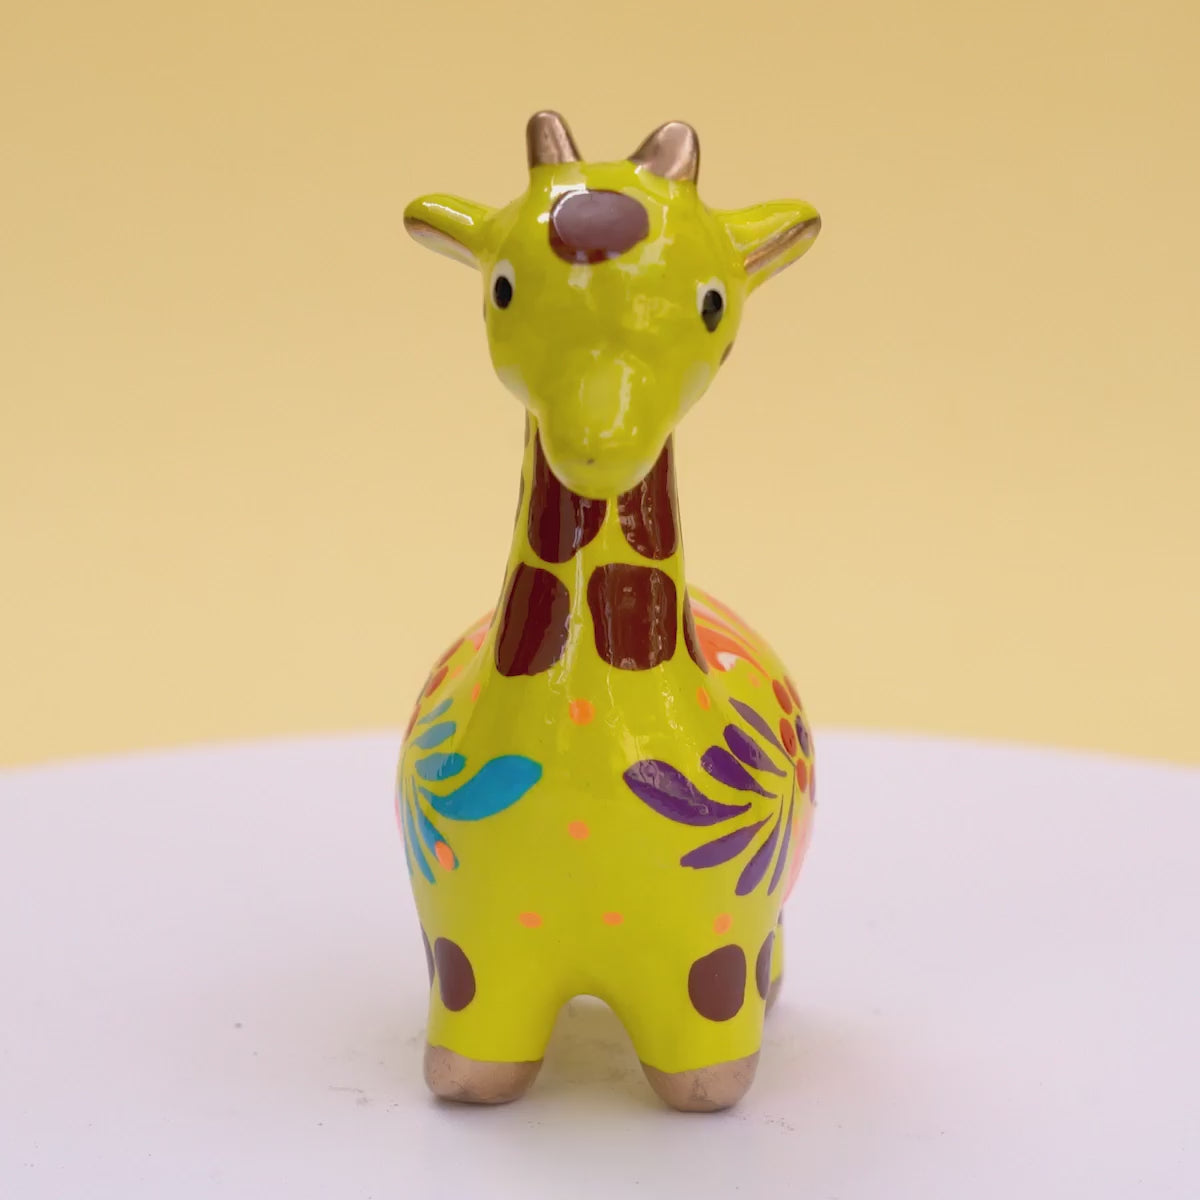 Giraffe - Confetti Ceramic Ornament